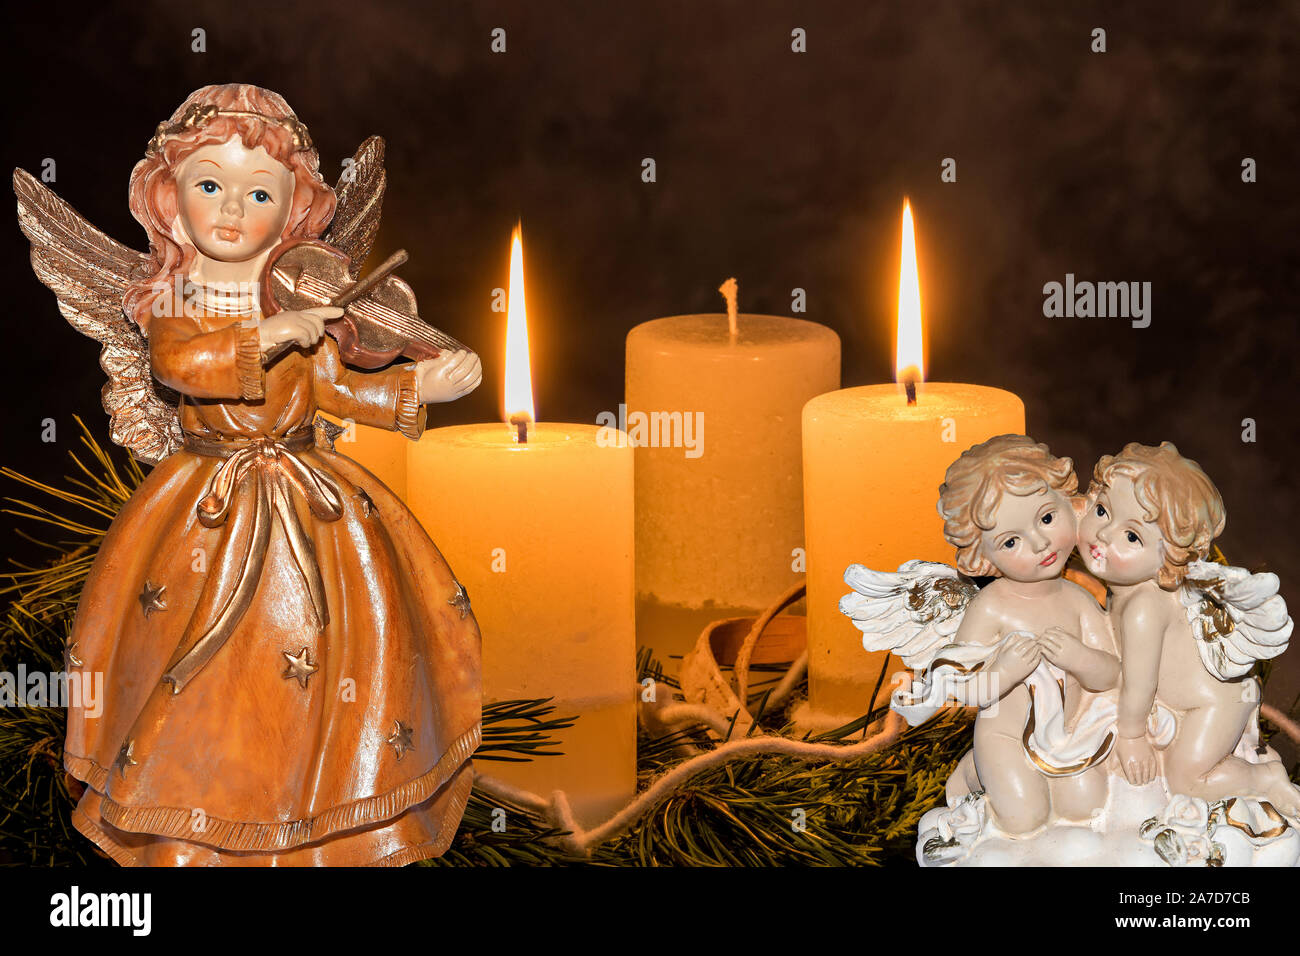 Ein Adventskranz zu Weihnachten sorgt für romatinsche Stimmung in der stillen Advent Zeit, 2. Advent, drei brennende Kerzen, Engel, weihnachtsengel, Stock Photo